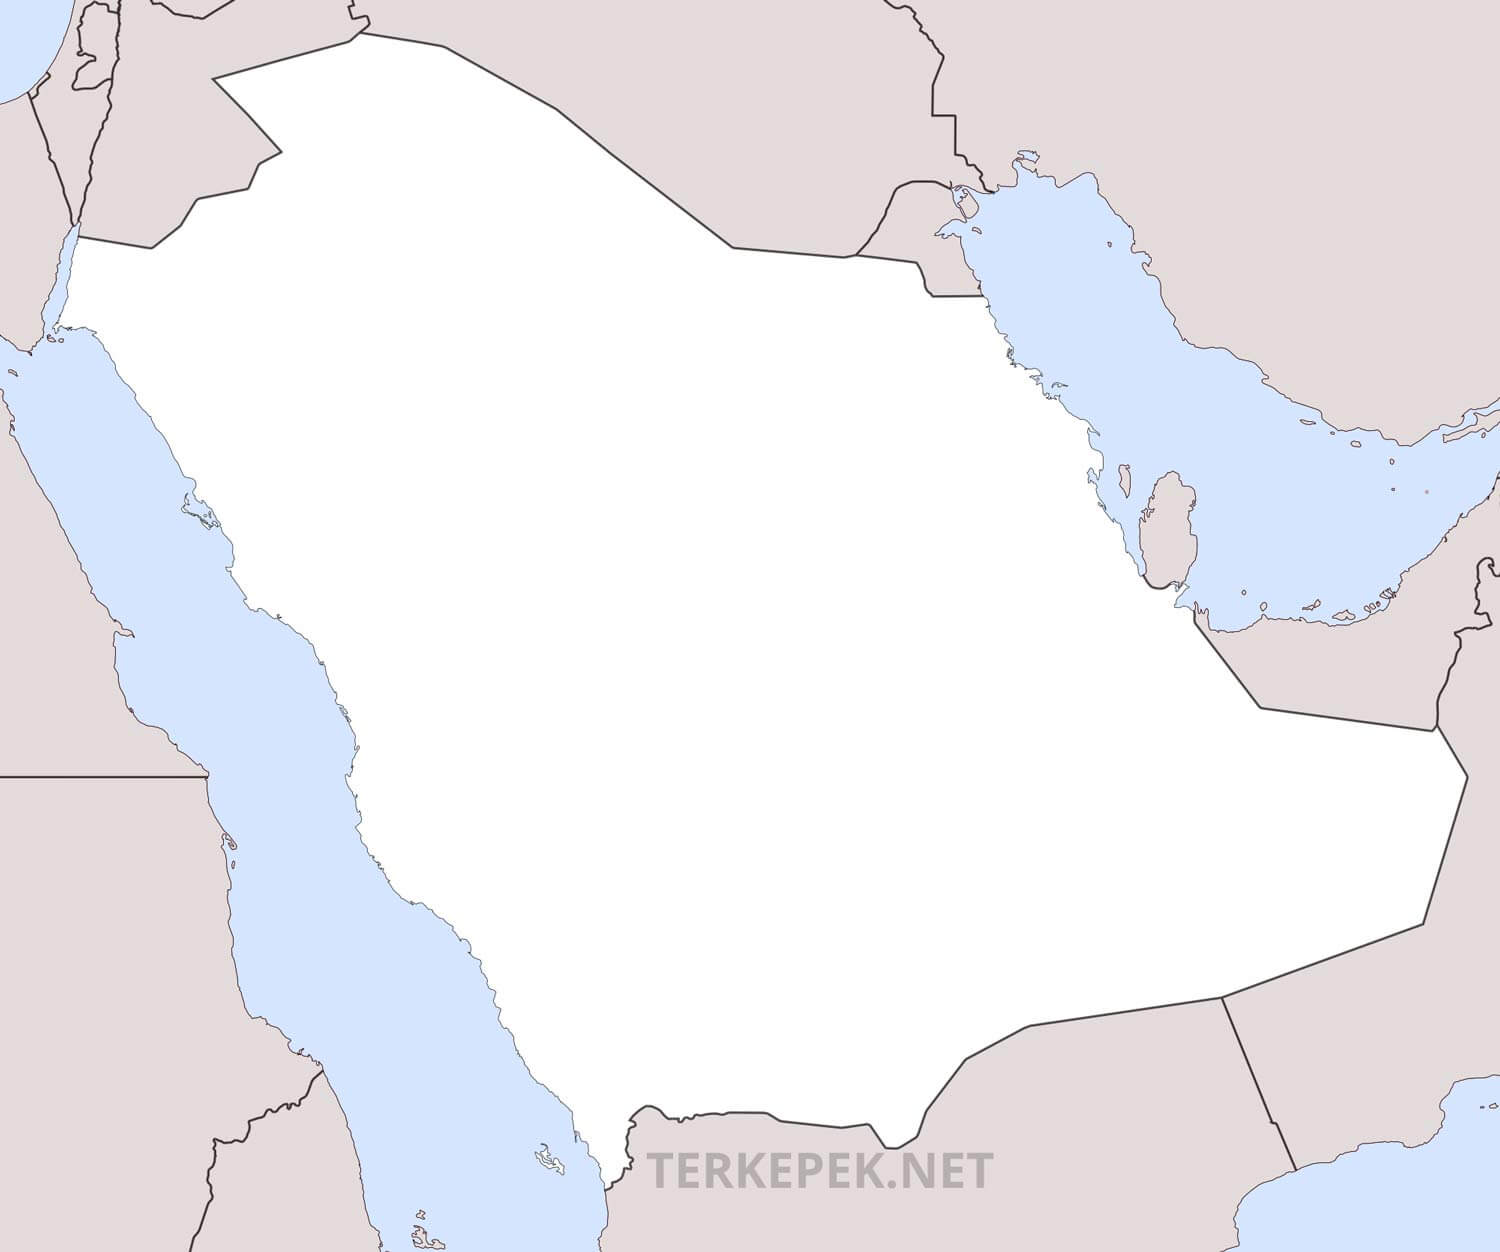 Szaúd Arábia - a titokzatos királyság (1. rész) - KKBK